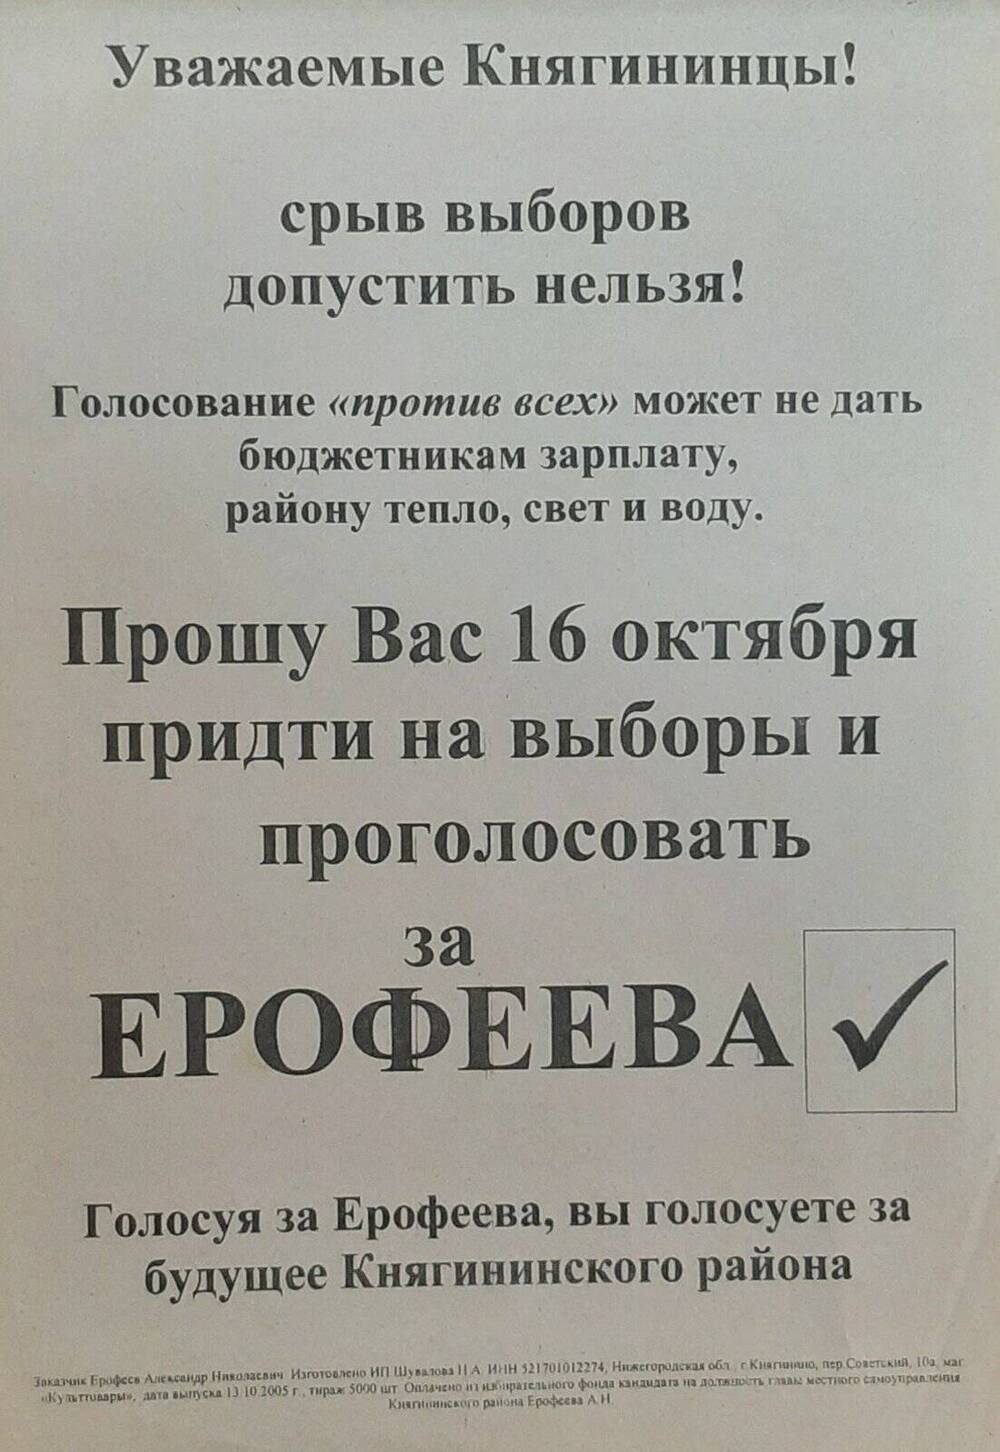 Листовка в поддержку ерофеева А.Н. с приглашением на выборы 16.10.2005 года